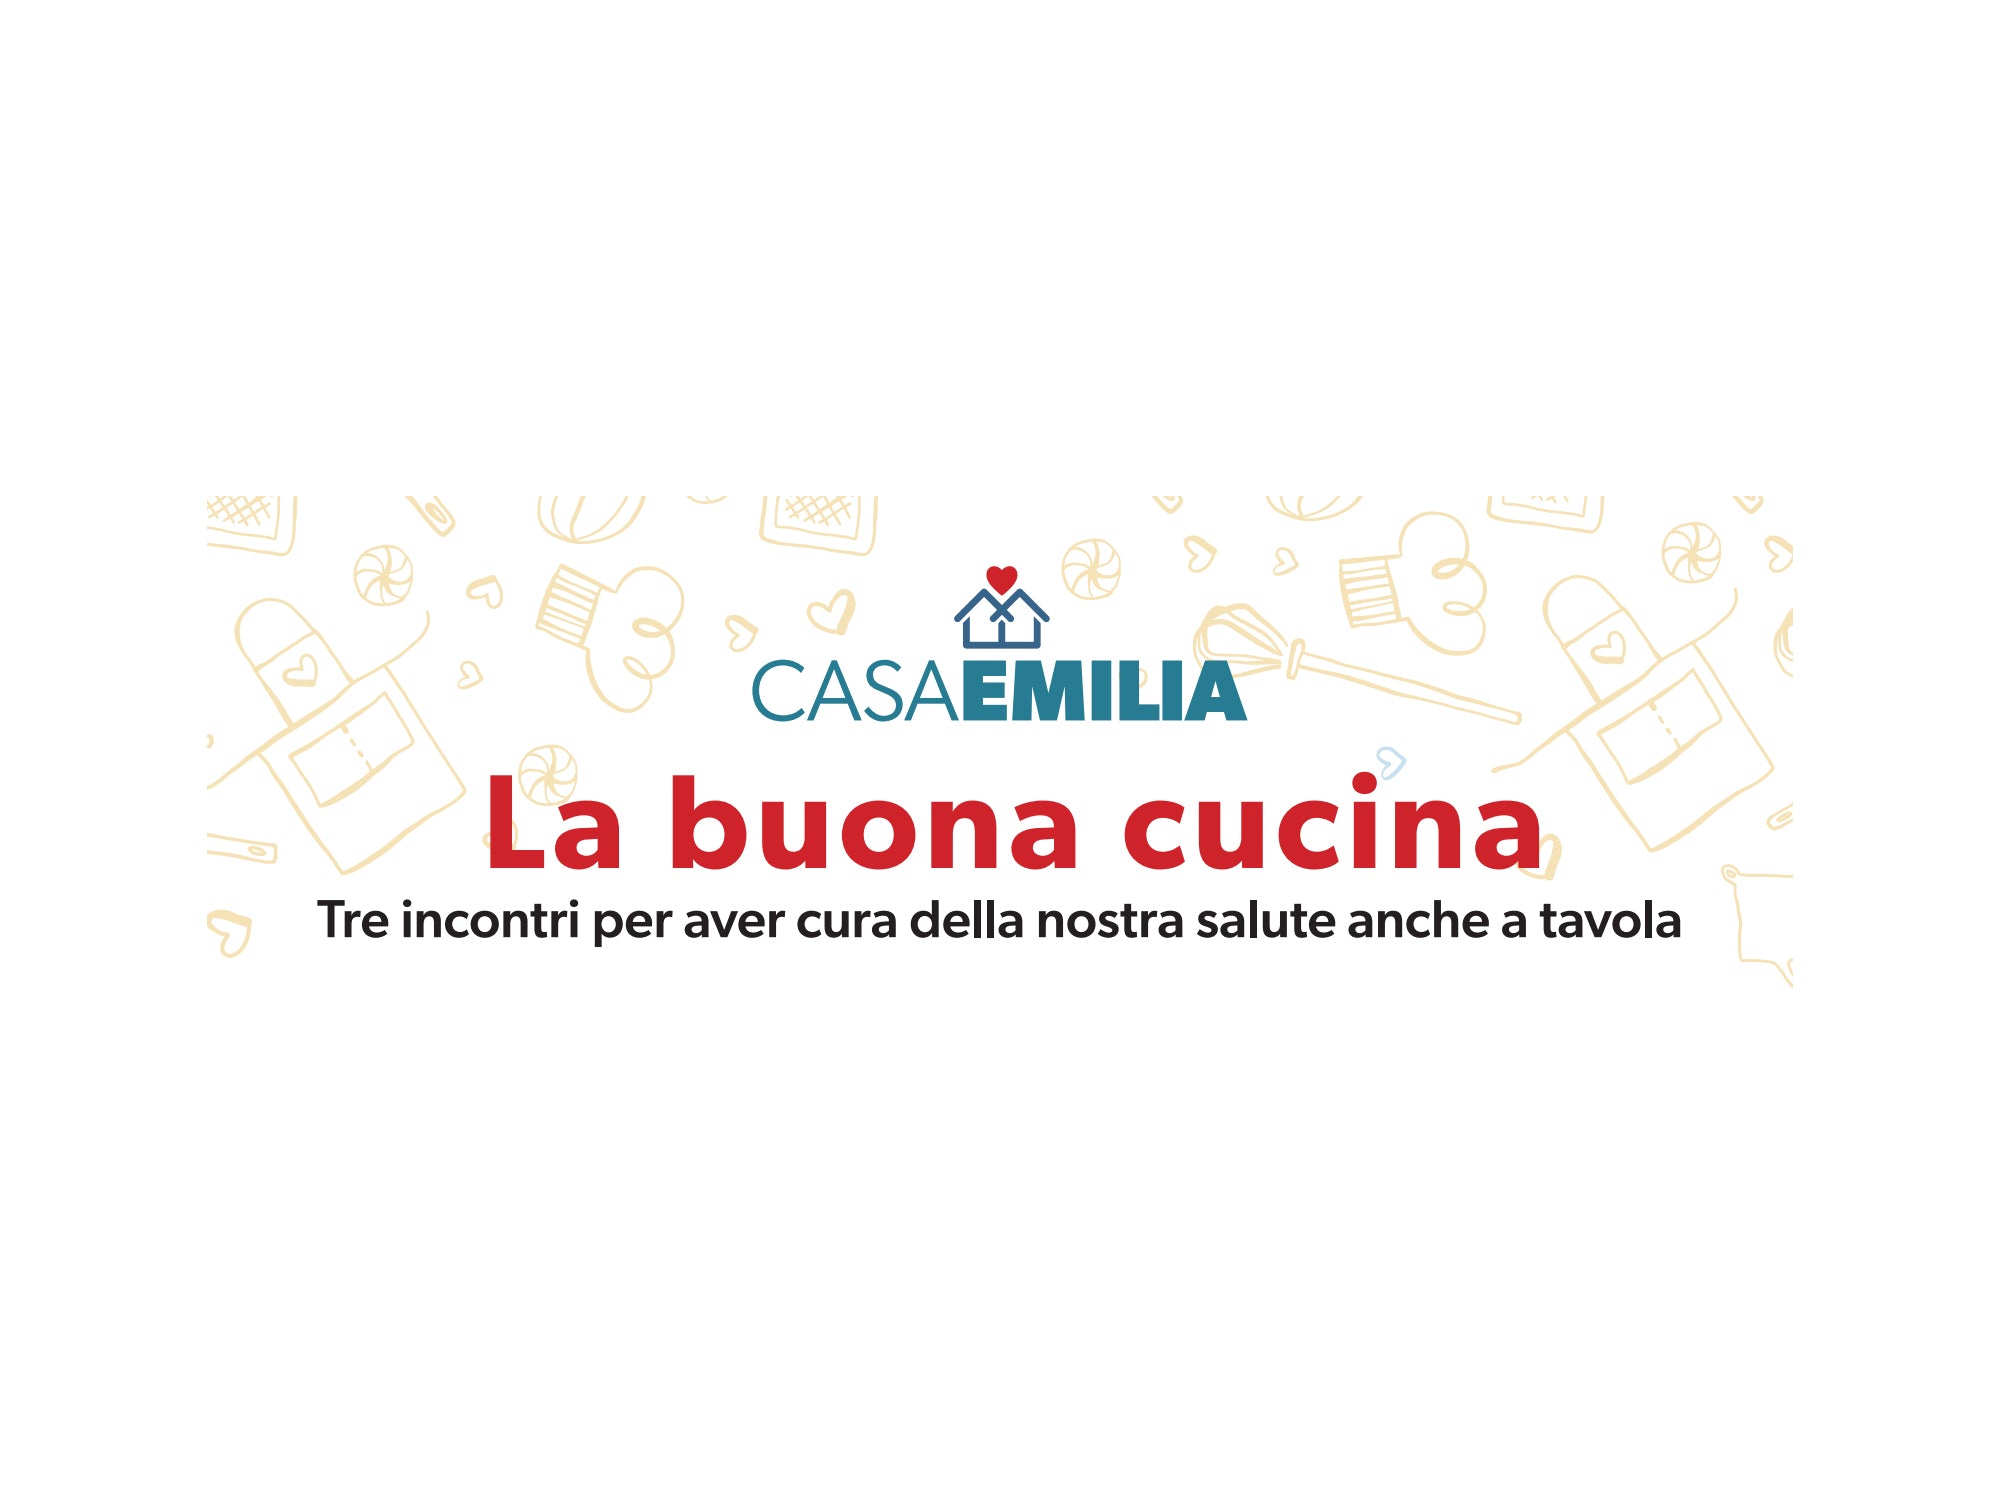 La Buona Cucina: Alce Nero insieme a Fondazione Sant’Orsola